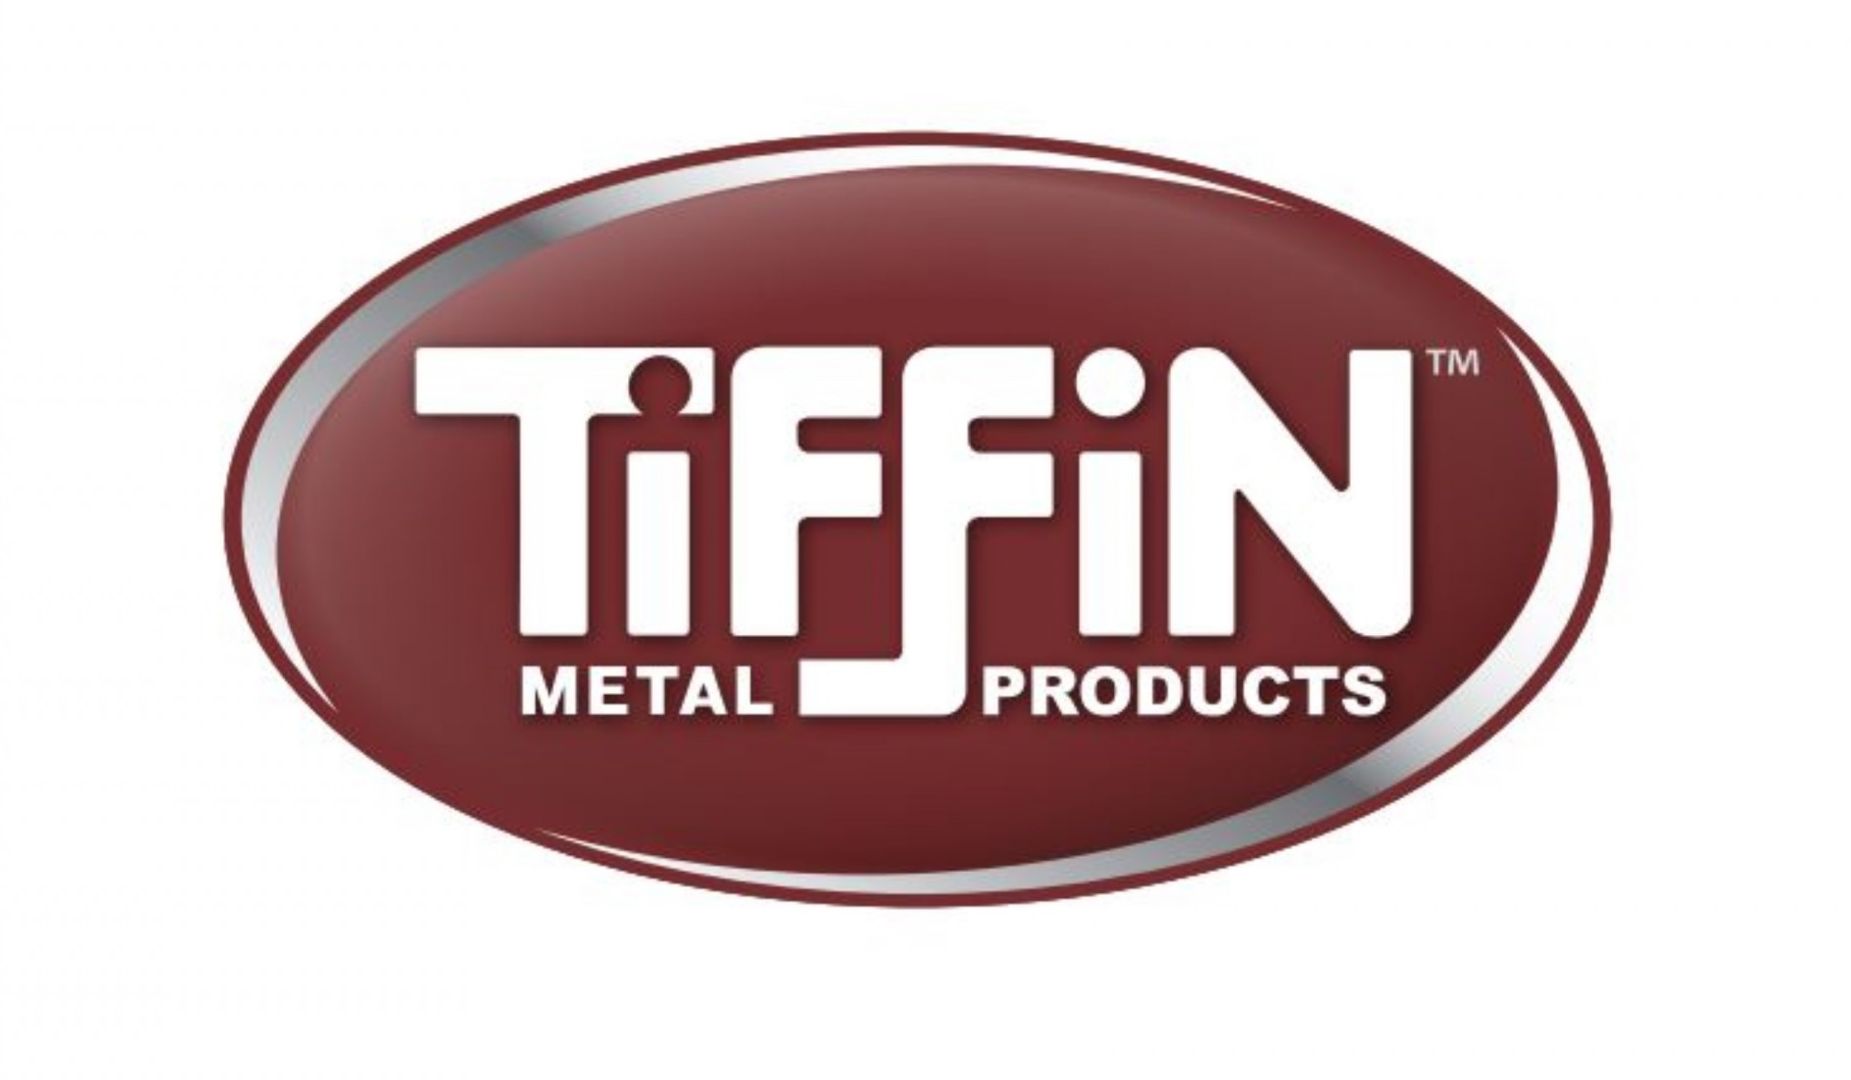 tiffin metal